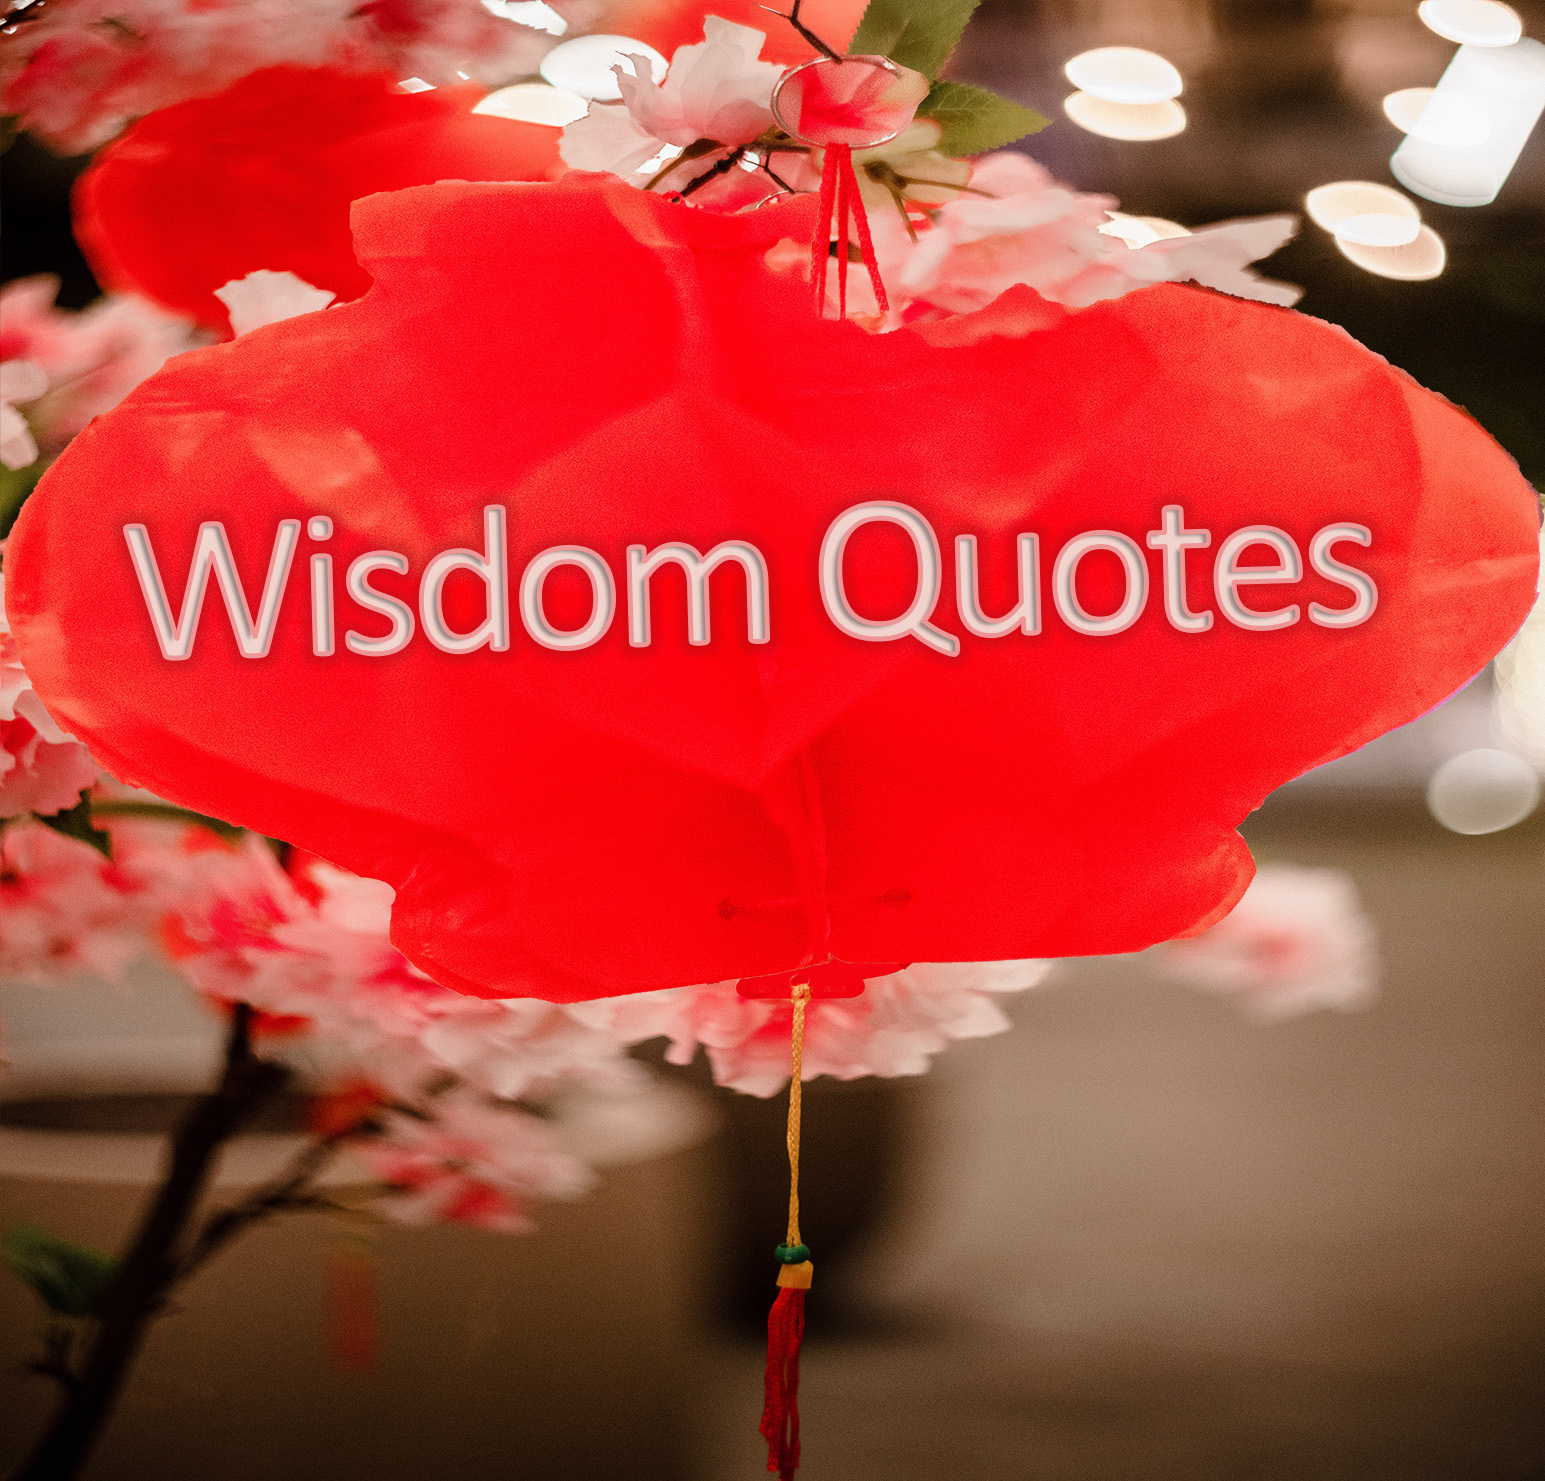 wisdom quotes images